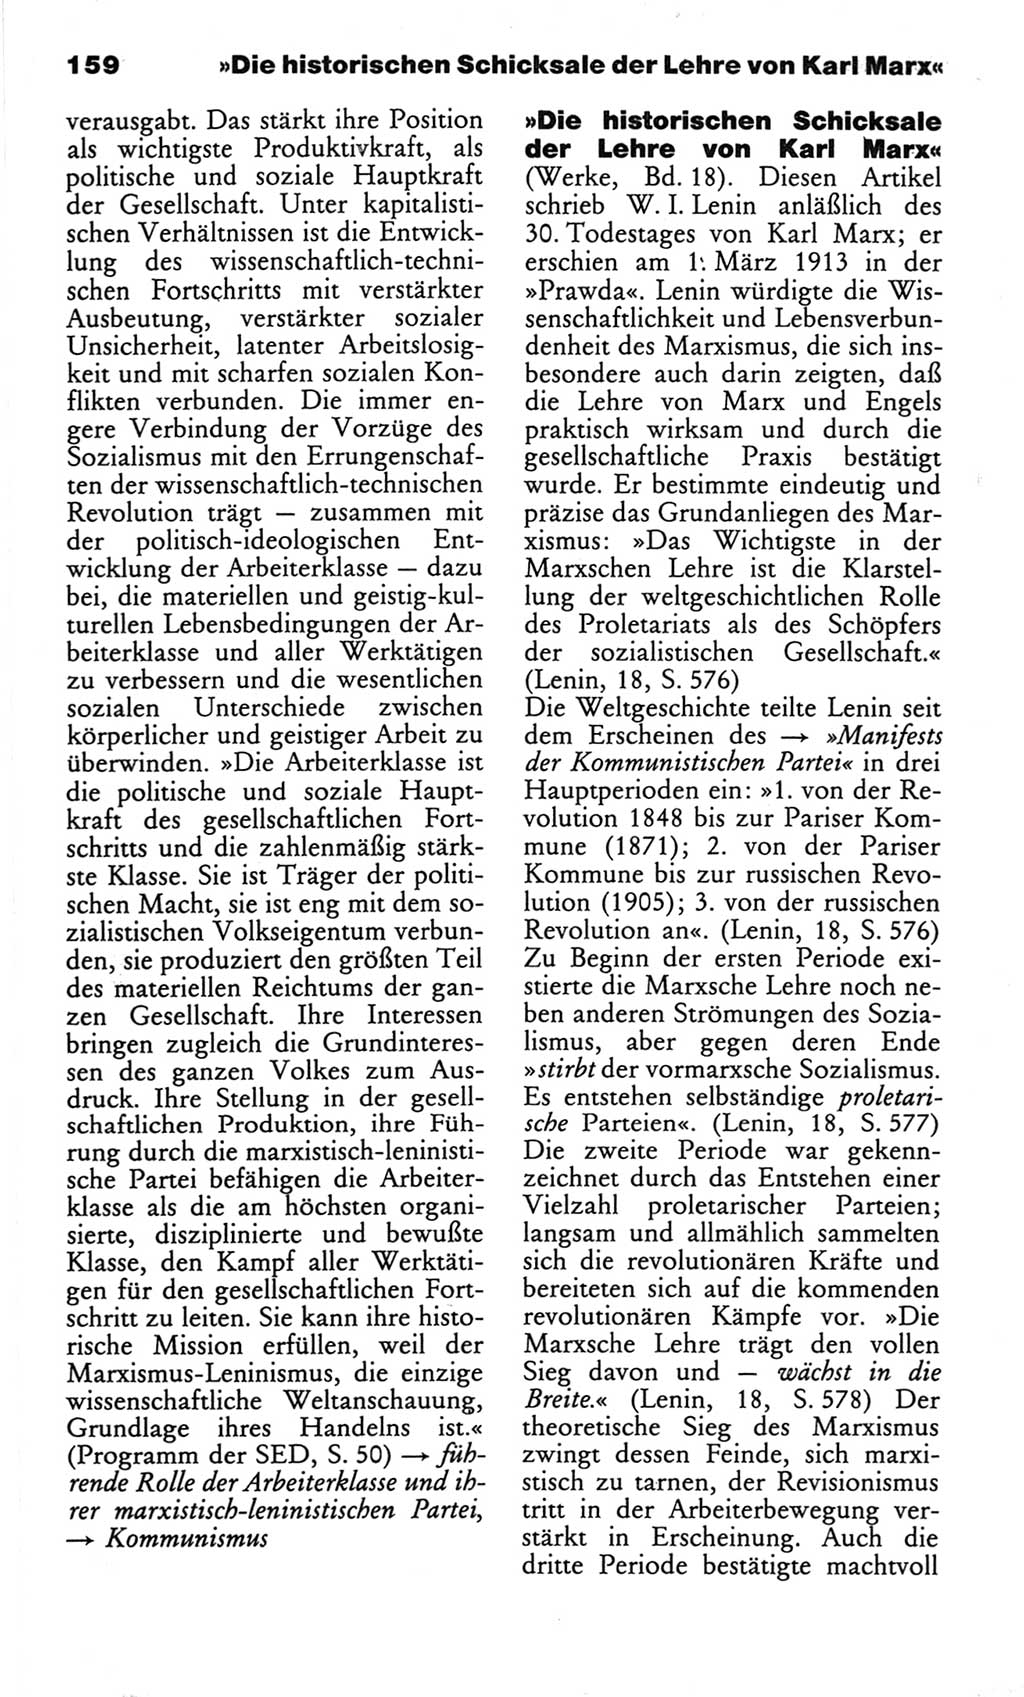 Wörterbuch des wissenschaftlichen Kommunismus [Deutsche Demokratische Republik (DDR)] 1982, Seite 159 (Wb. wiss. Komm. DDR 1982, S. 159)